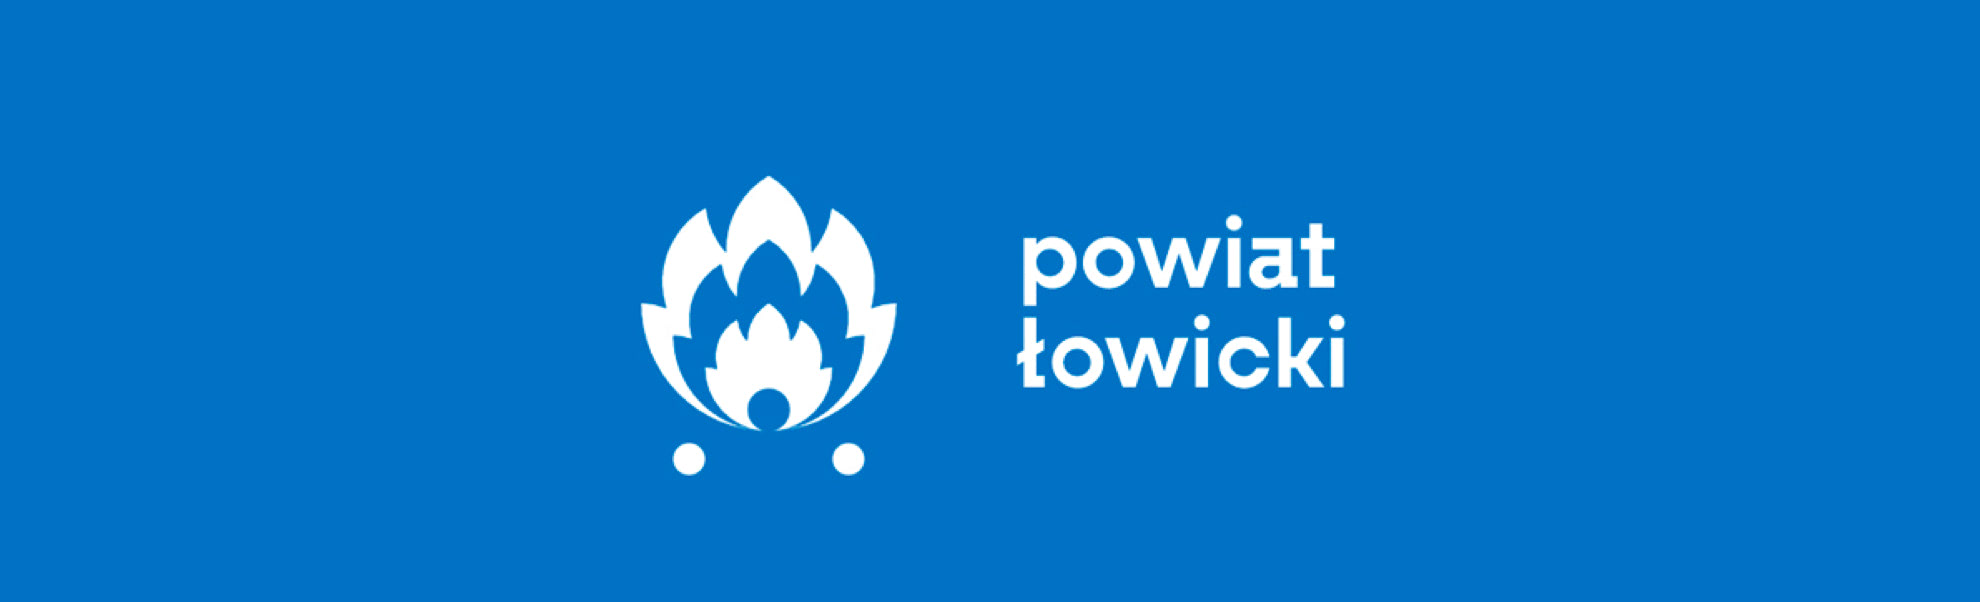 nowe logo powiatu łowickiego